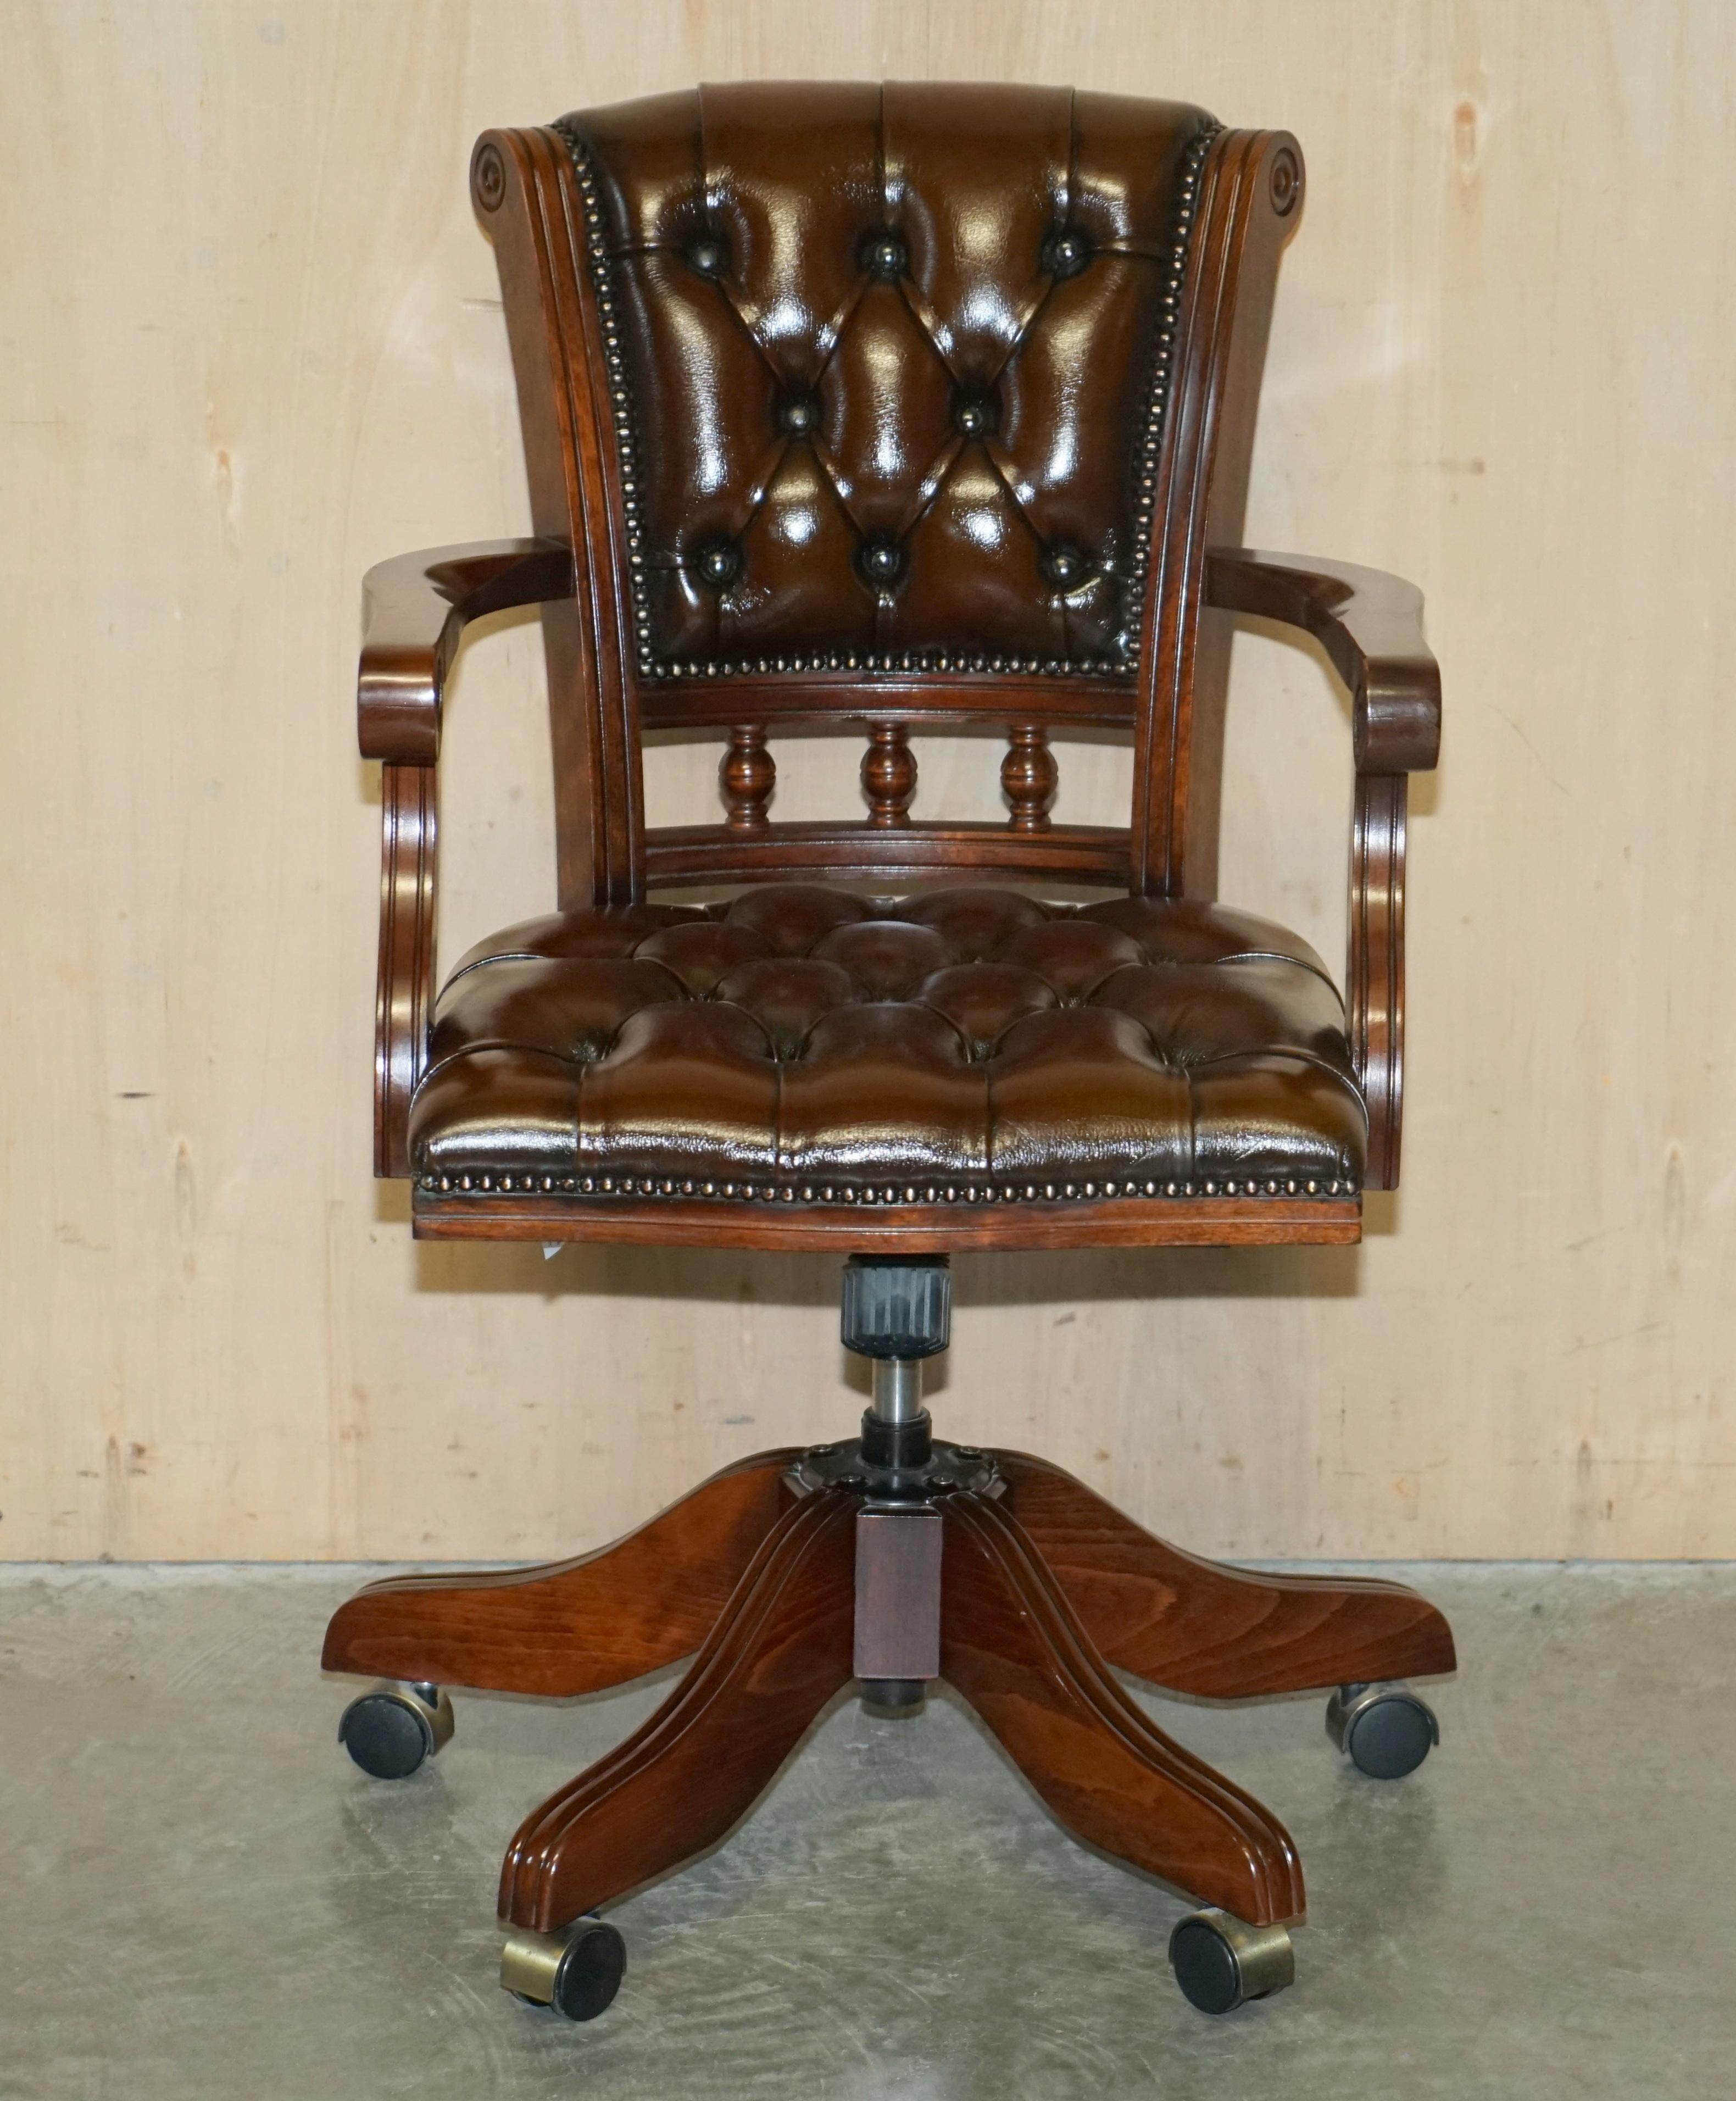 Nous sommes ravis d'offrir à la vente ce magnifique fauteuil de directeur en cuir marron Chesterfield, entièrement restauré et encadré de hêtre.

Un très beau fauteuil de directeur, bien fabriqué et confortable, le fauteuil a une base élévatrice à